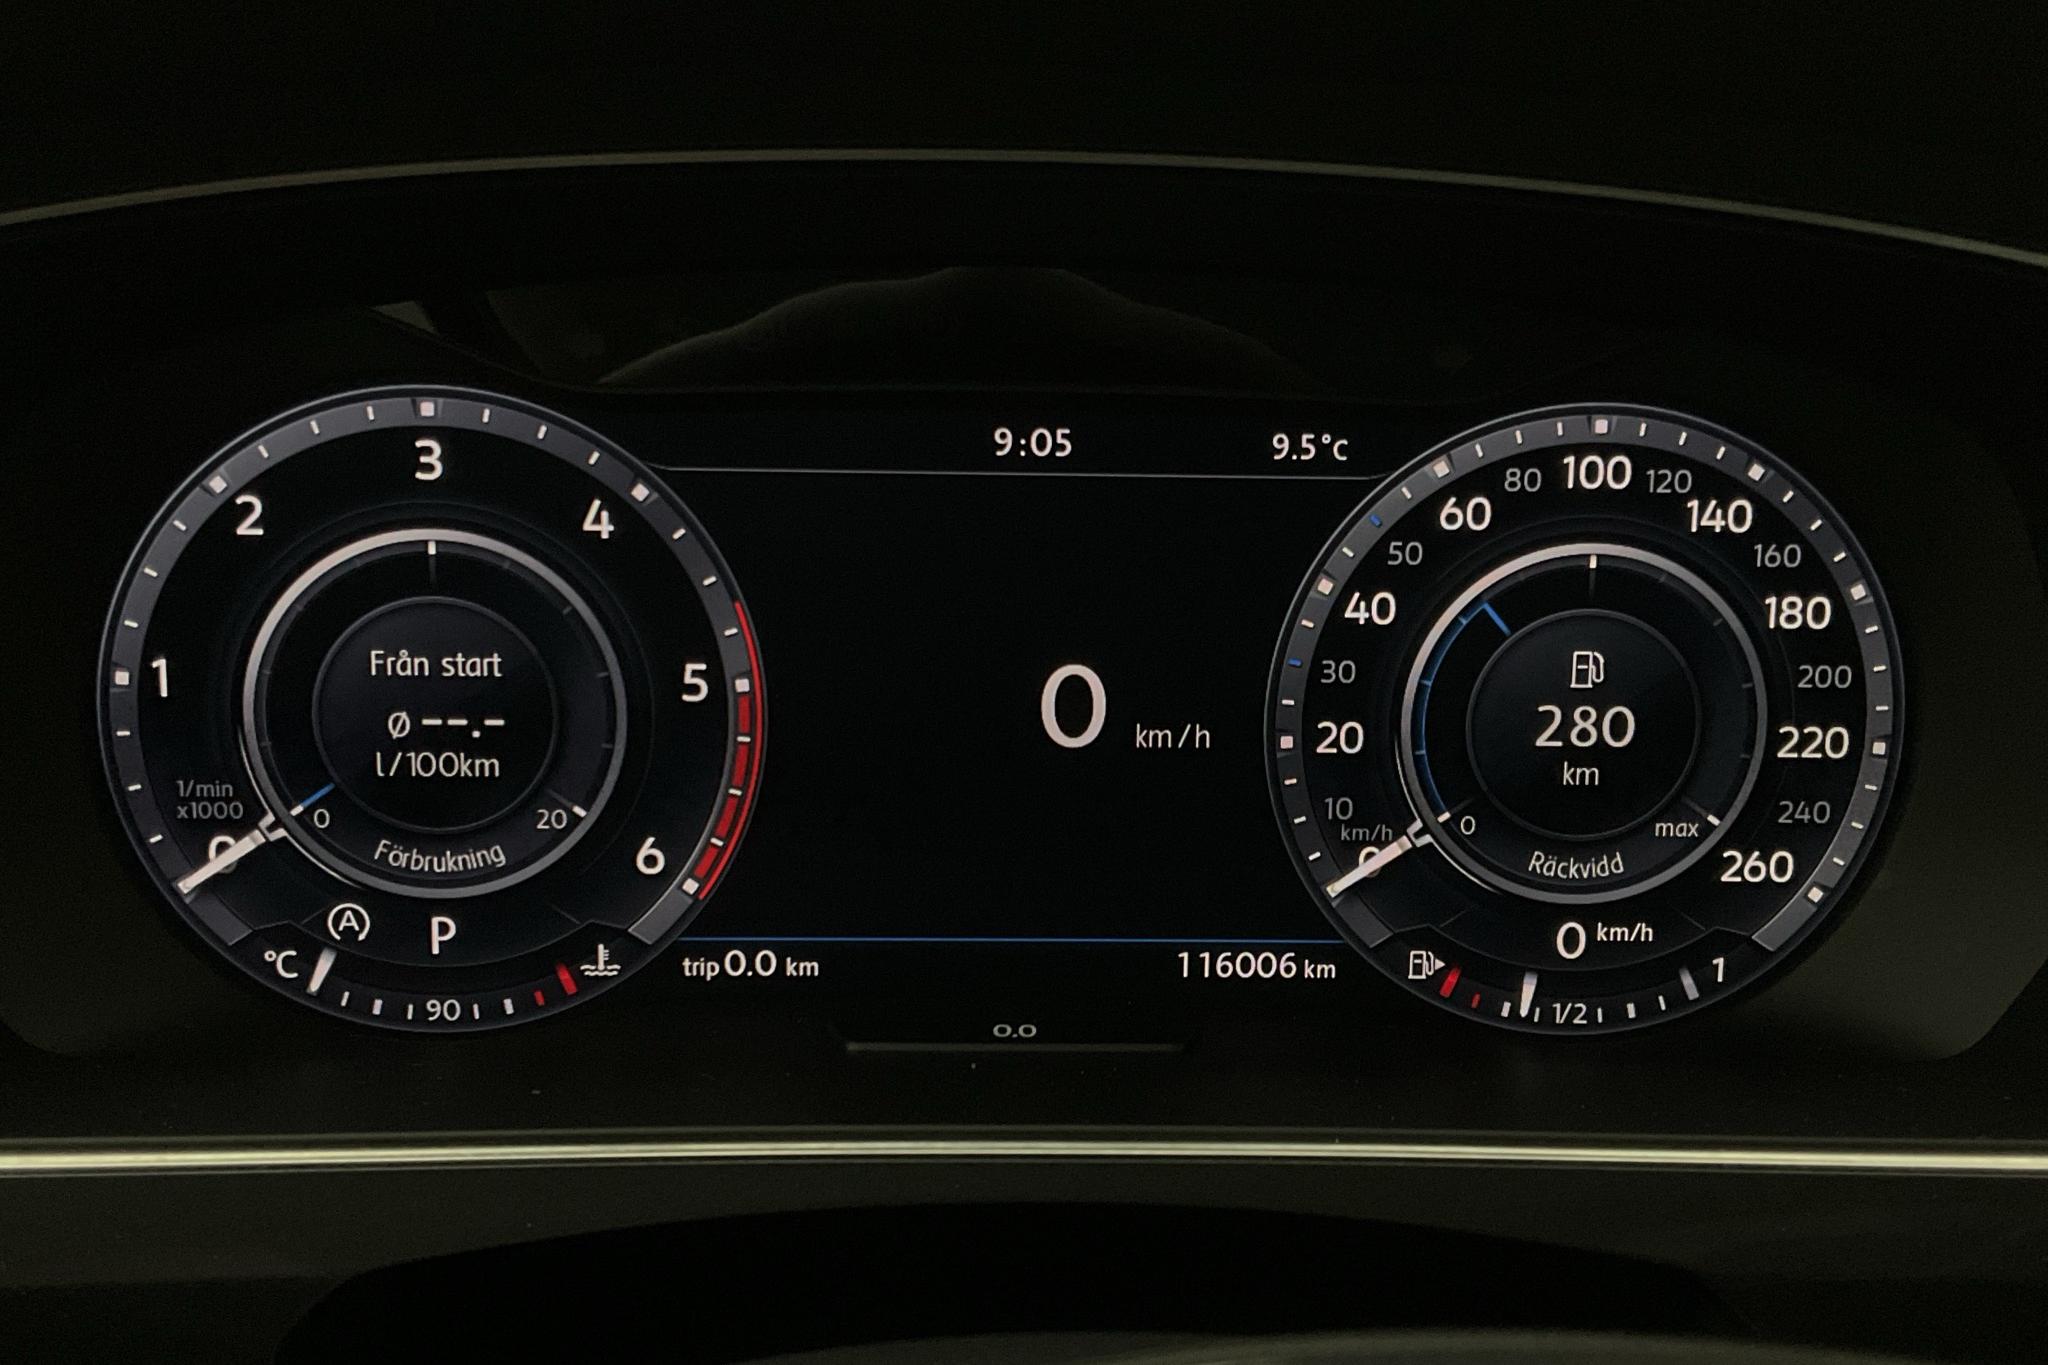 VW Tiguan 2.0 TDI 4MOTION (190hk) - 116 010 km - Automaatne - must - 2017